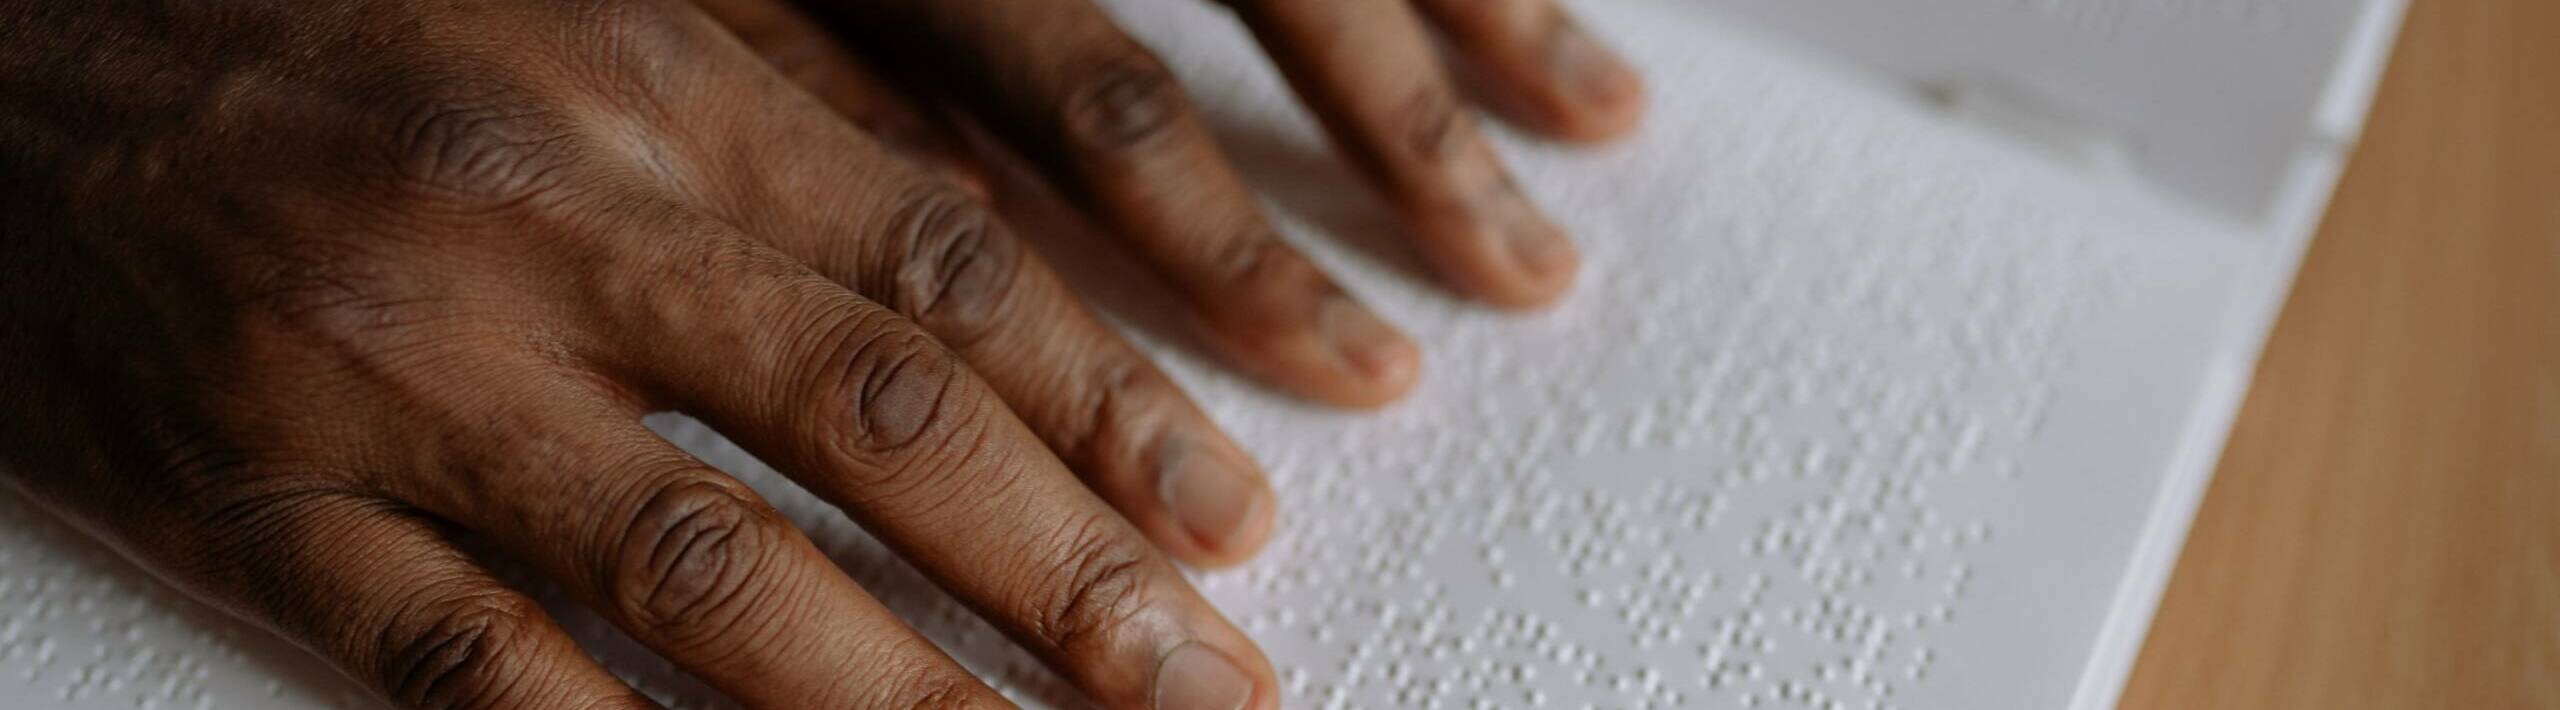 Blindenschrift lesende Hände